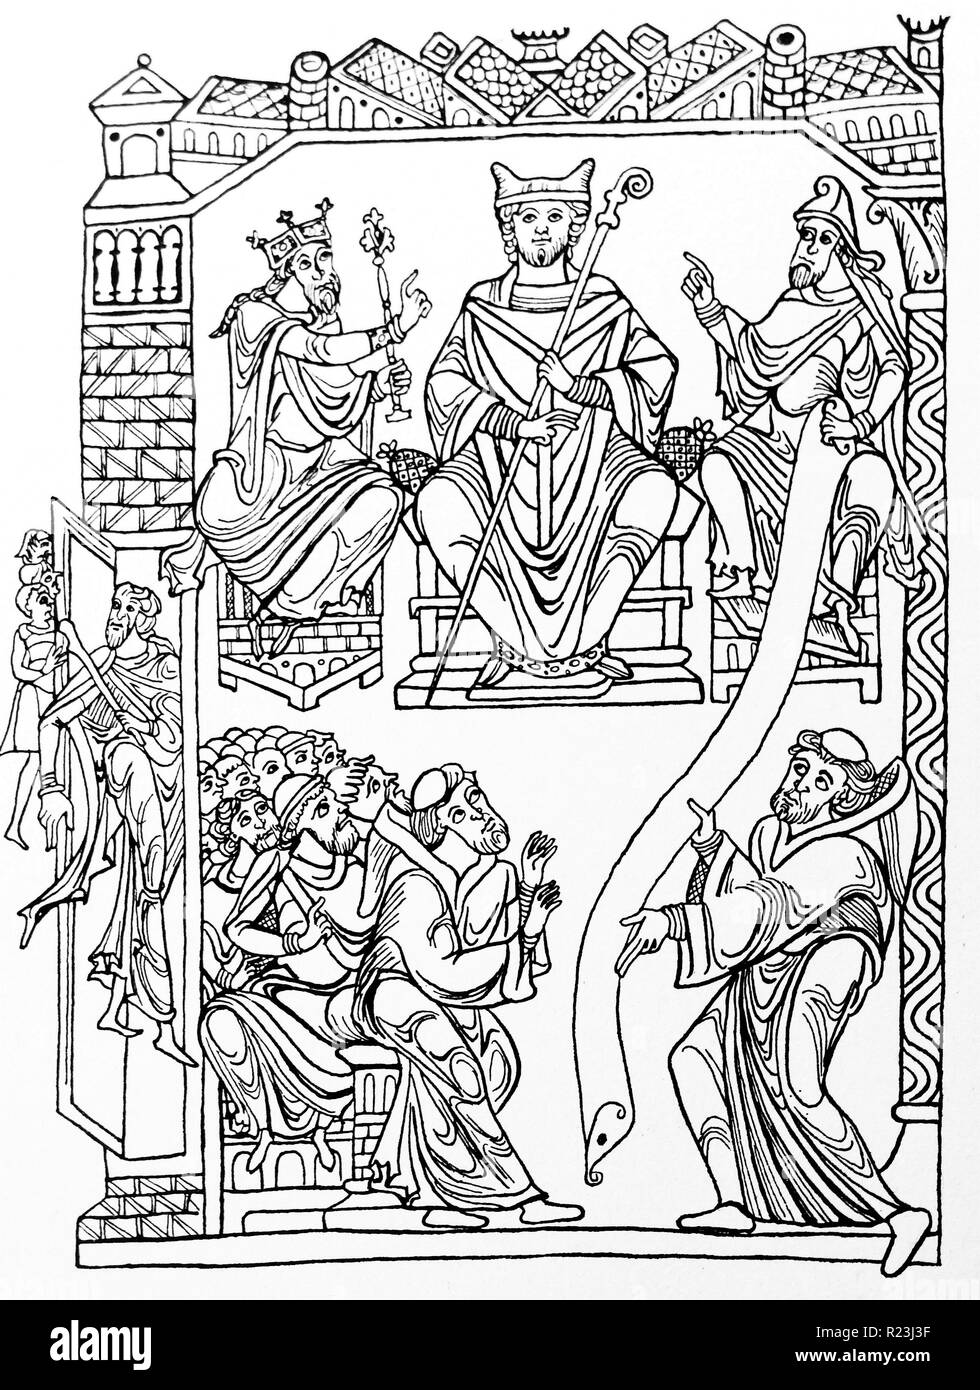 Zeichnung des Hl. Benedikt Übergabe sein Buch (die Regel) einer Gruppe von Mönchen, die die Grundlage des abendländischen Mönchtums. Vom 12. Jahrhundert Stockfoto